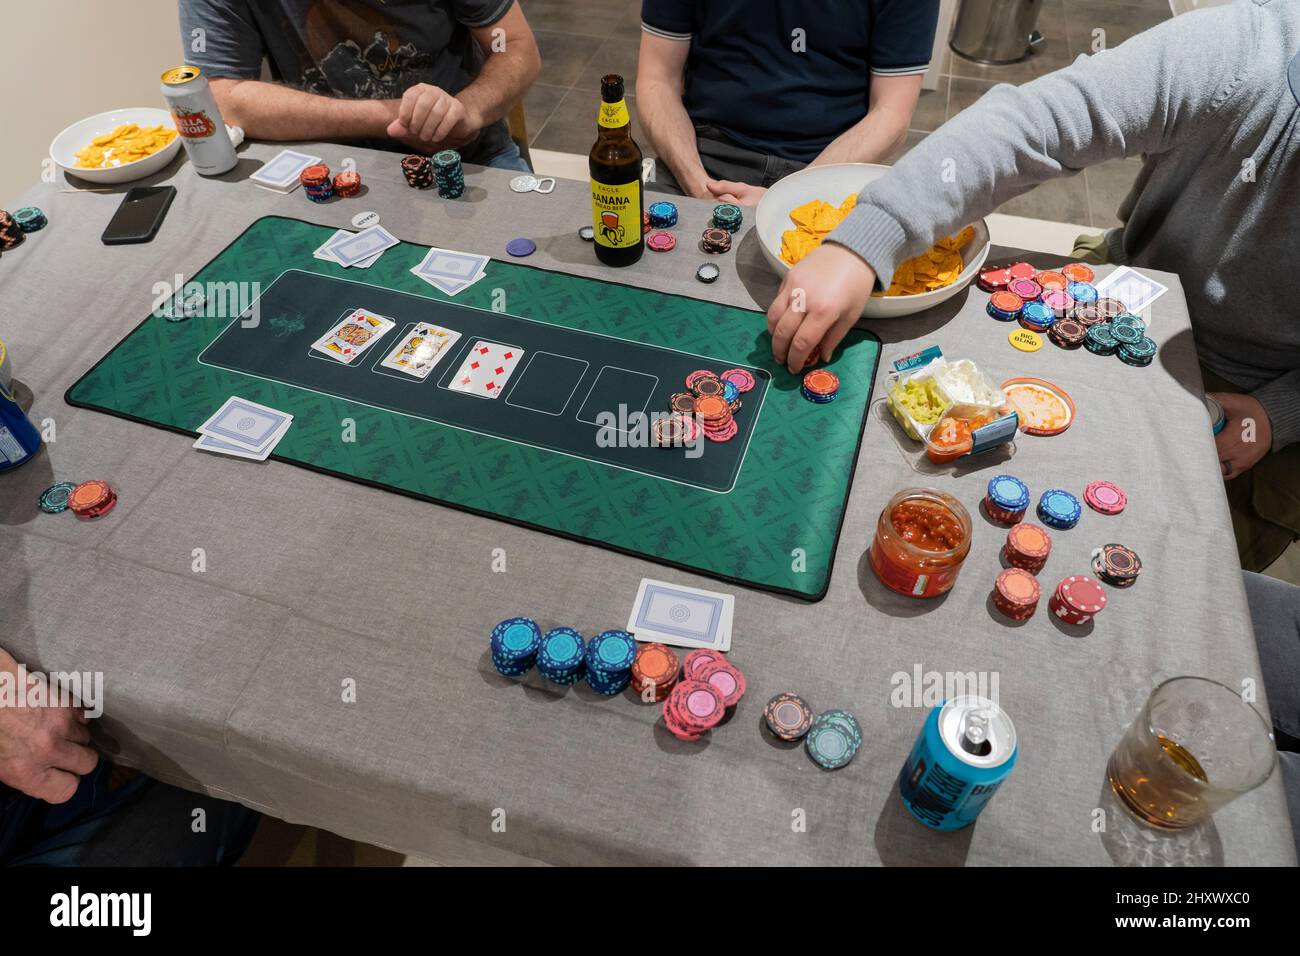 Des amis masculins jouant au Texas Hol 'em Poker sur une table à la maison avec des jetons de jeu, un tapis de poker, des jetons et de la sauce salsa et des bières. Angleterre Banque D'Images